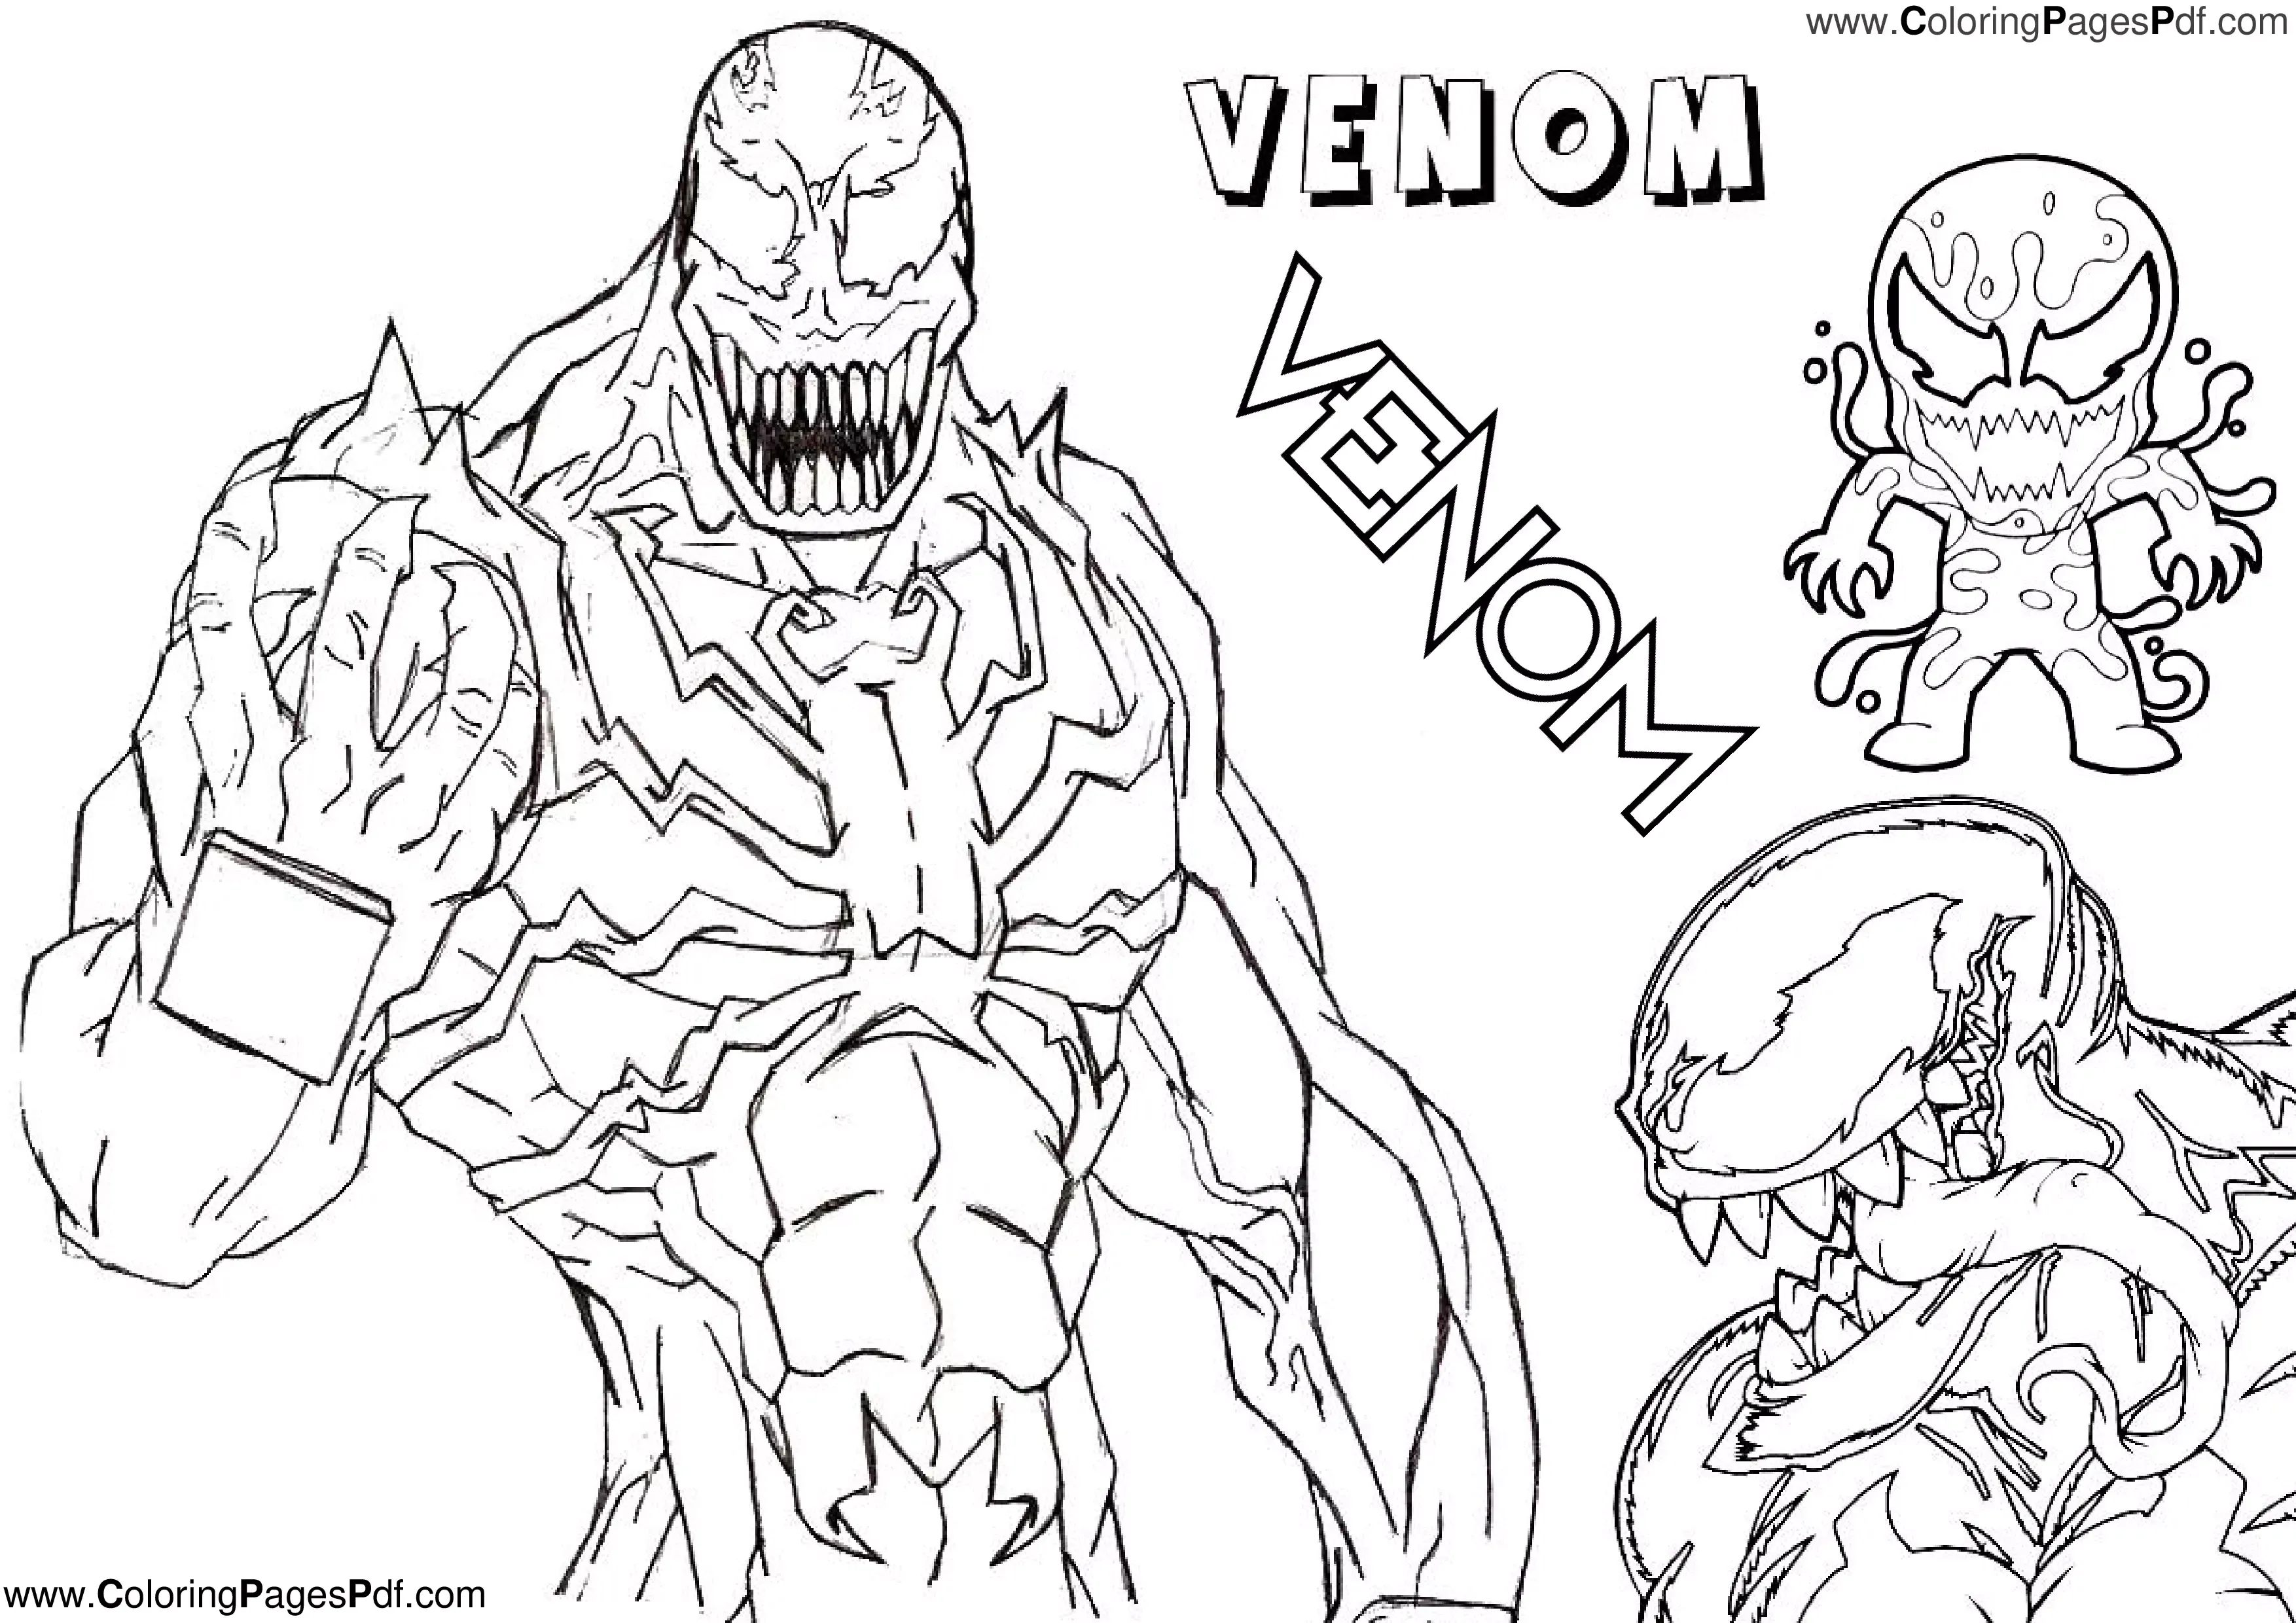 Venom coloring pages pdf